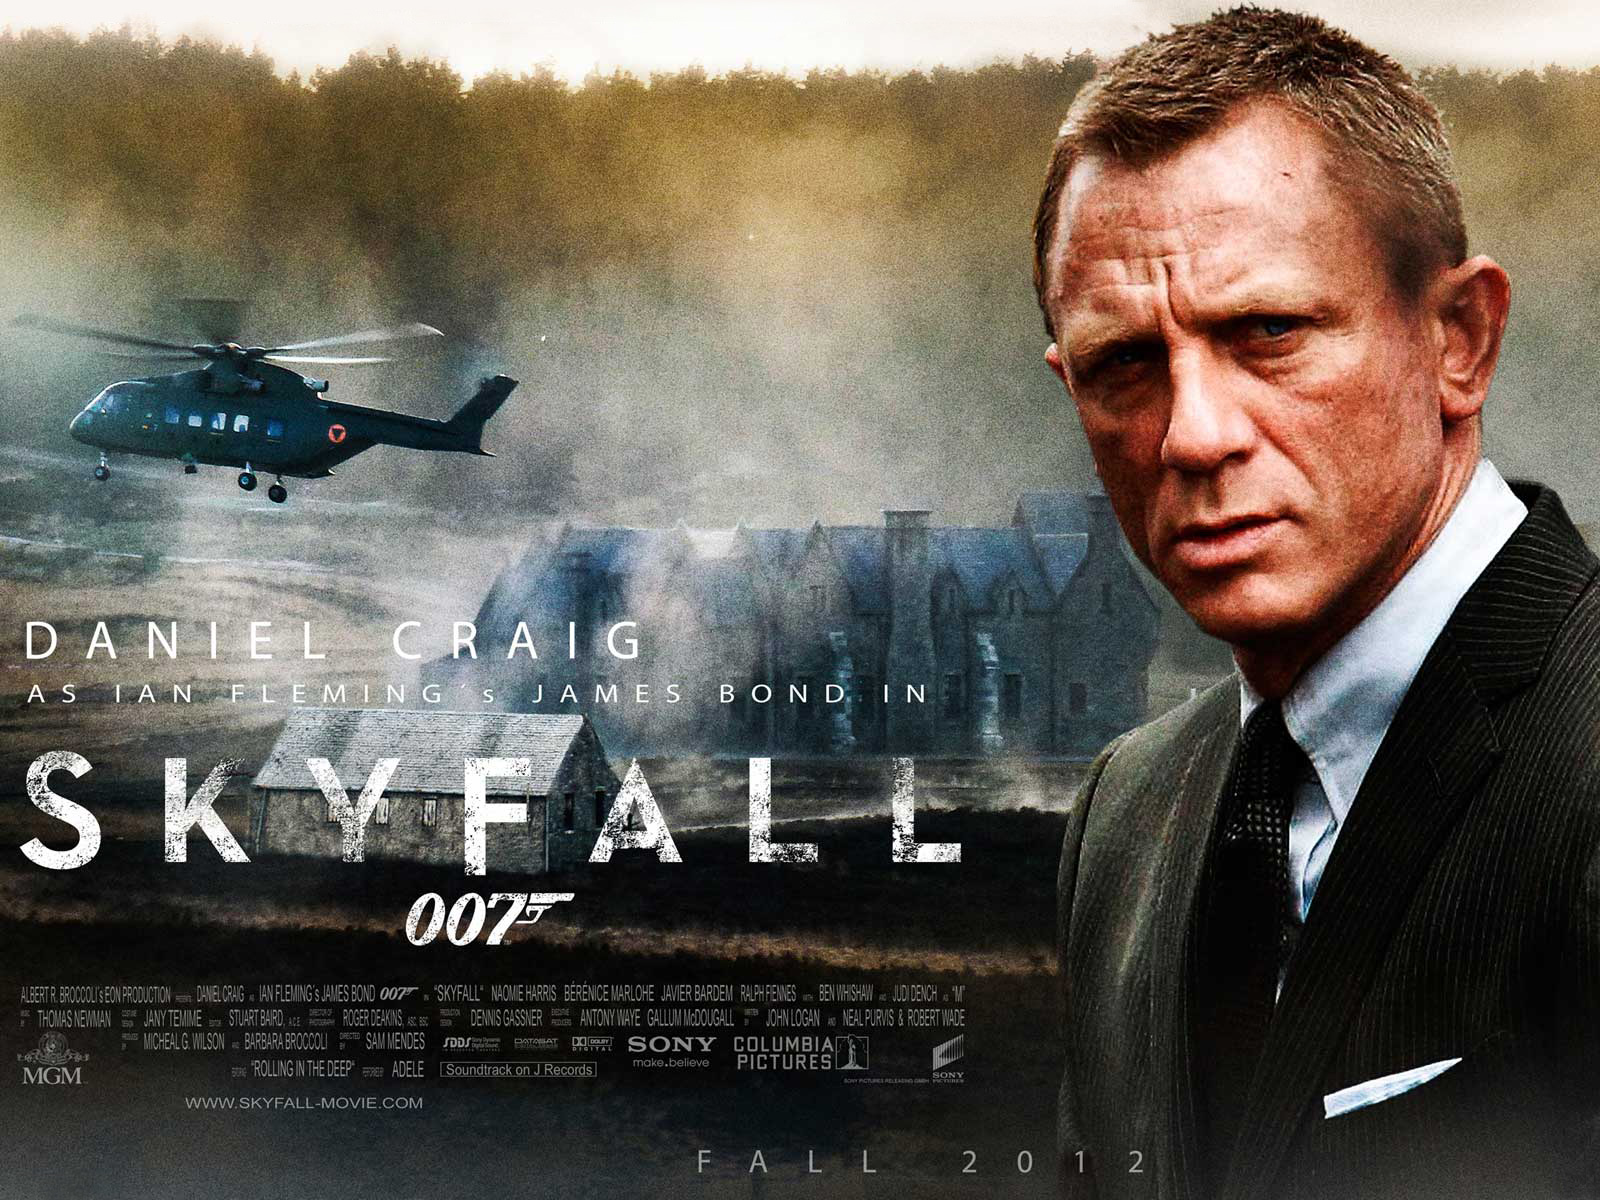 007シリーズで、次のジェームス・ボンドになるのは誰かというのがブックメーカーで予想されています。 | ワールドカジノナビ